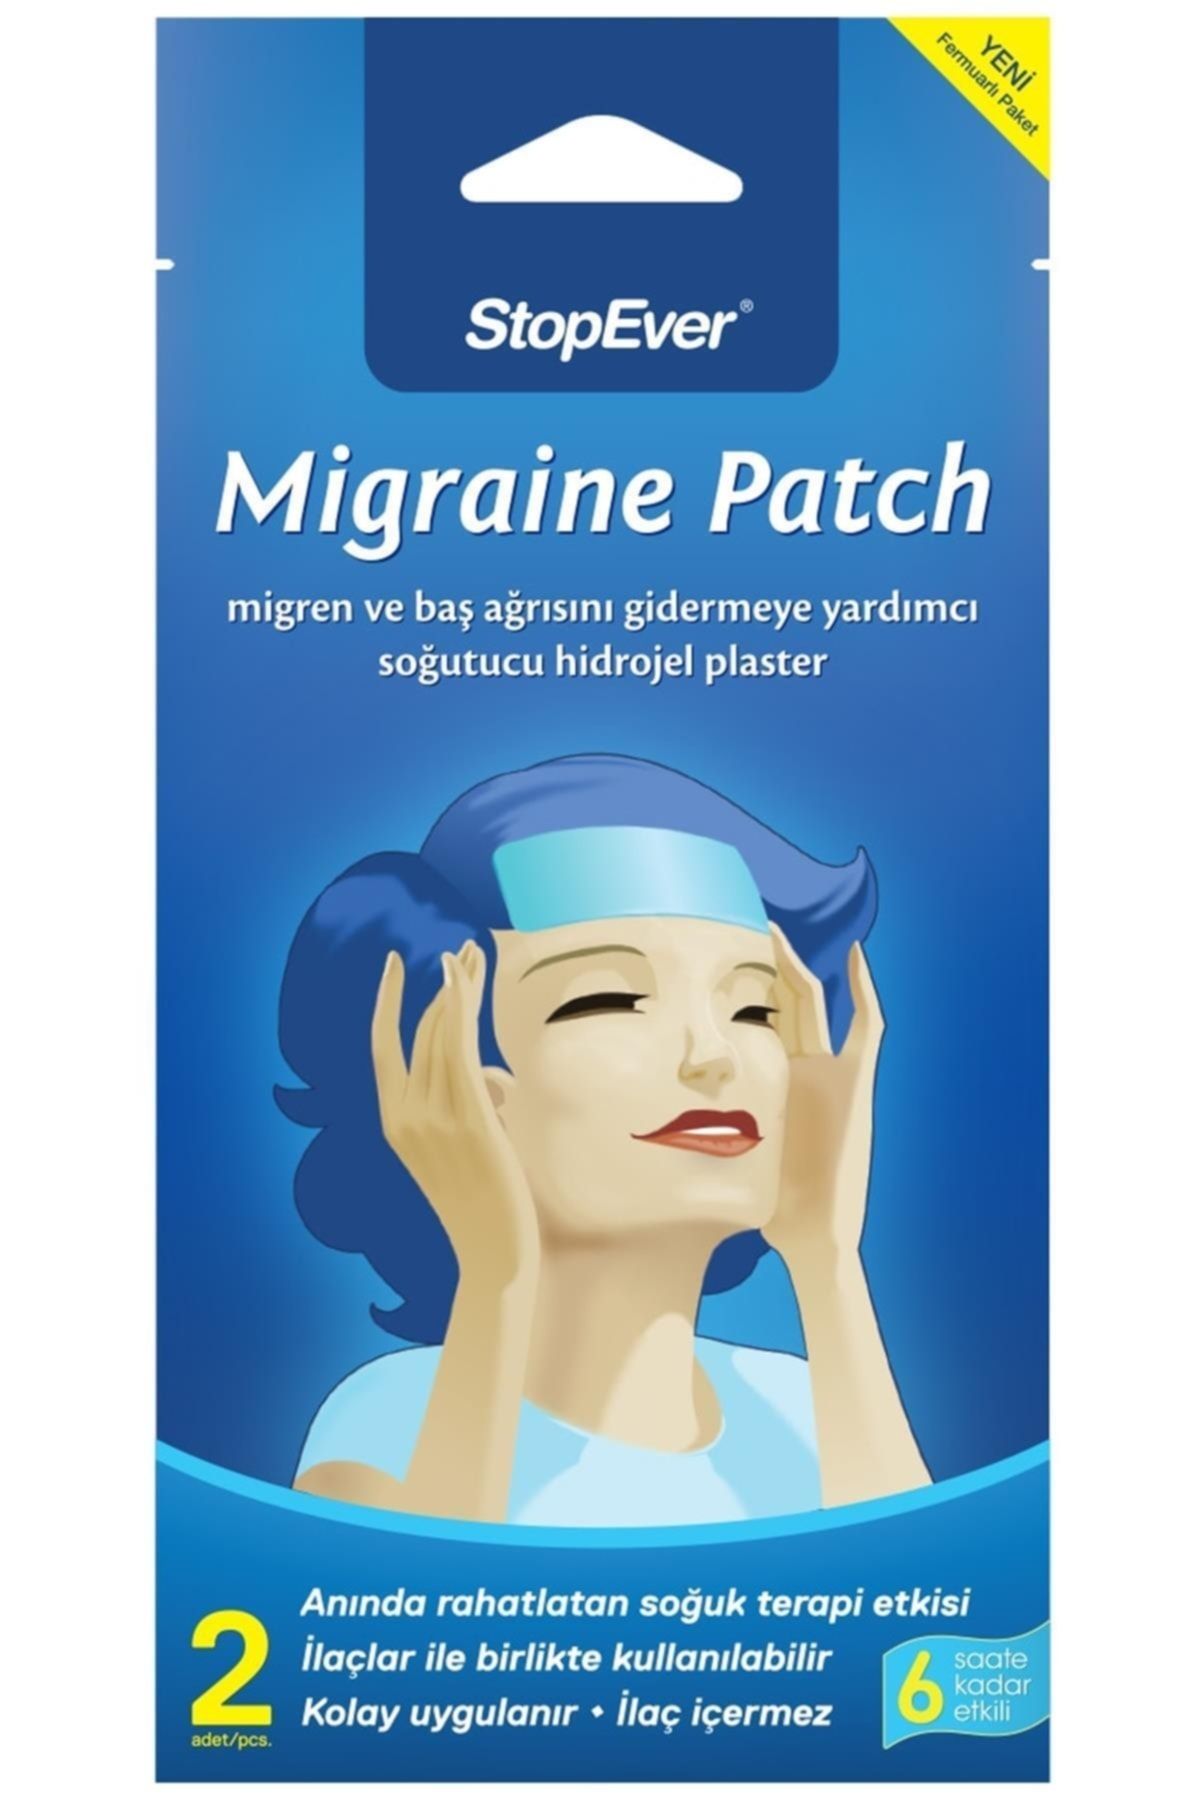 StopEver Marka: Migraine Patch Soğutucu Hidrojel Plaster Kategori: Diğer Sağlık Ürünleri